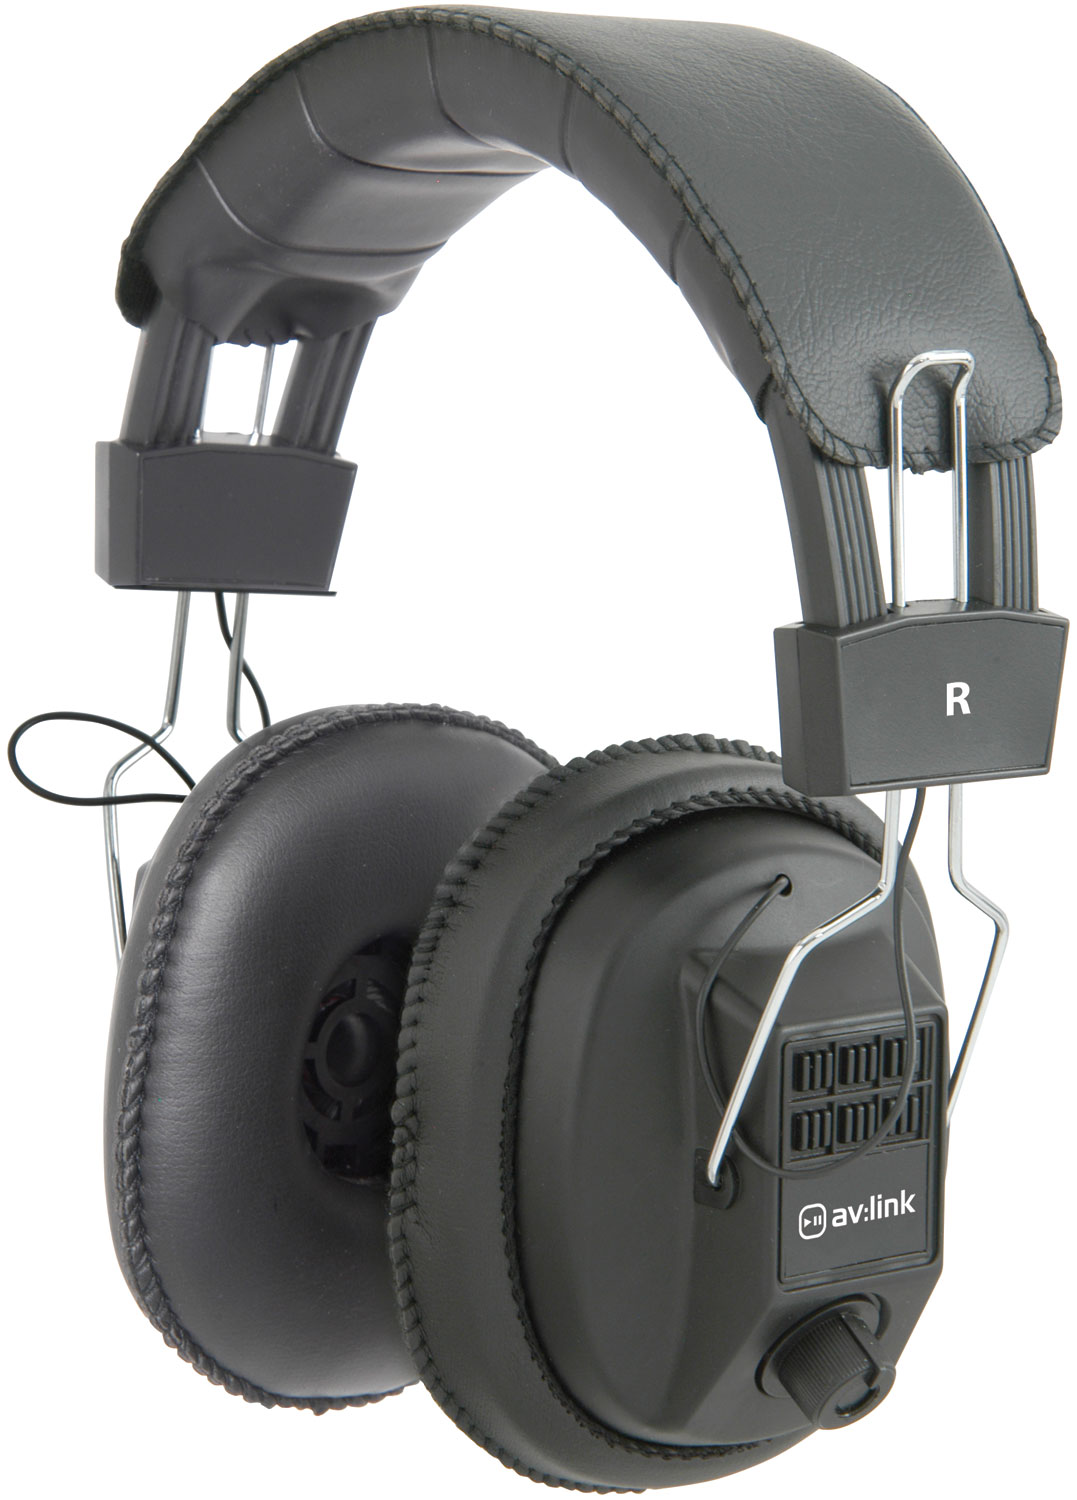 Mono/Stereo Headphones with Volume Control